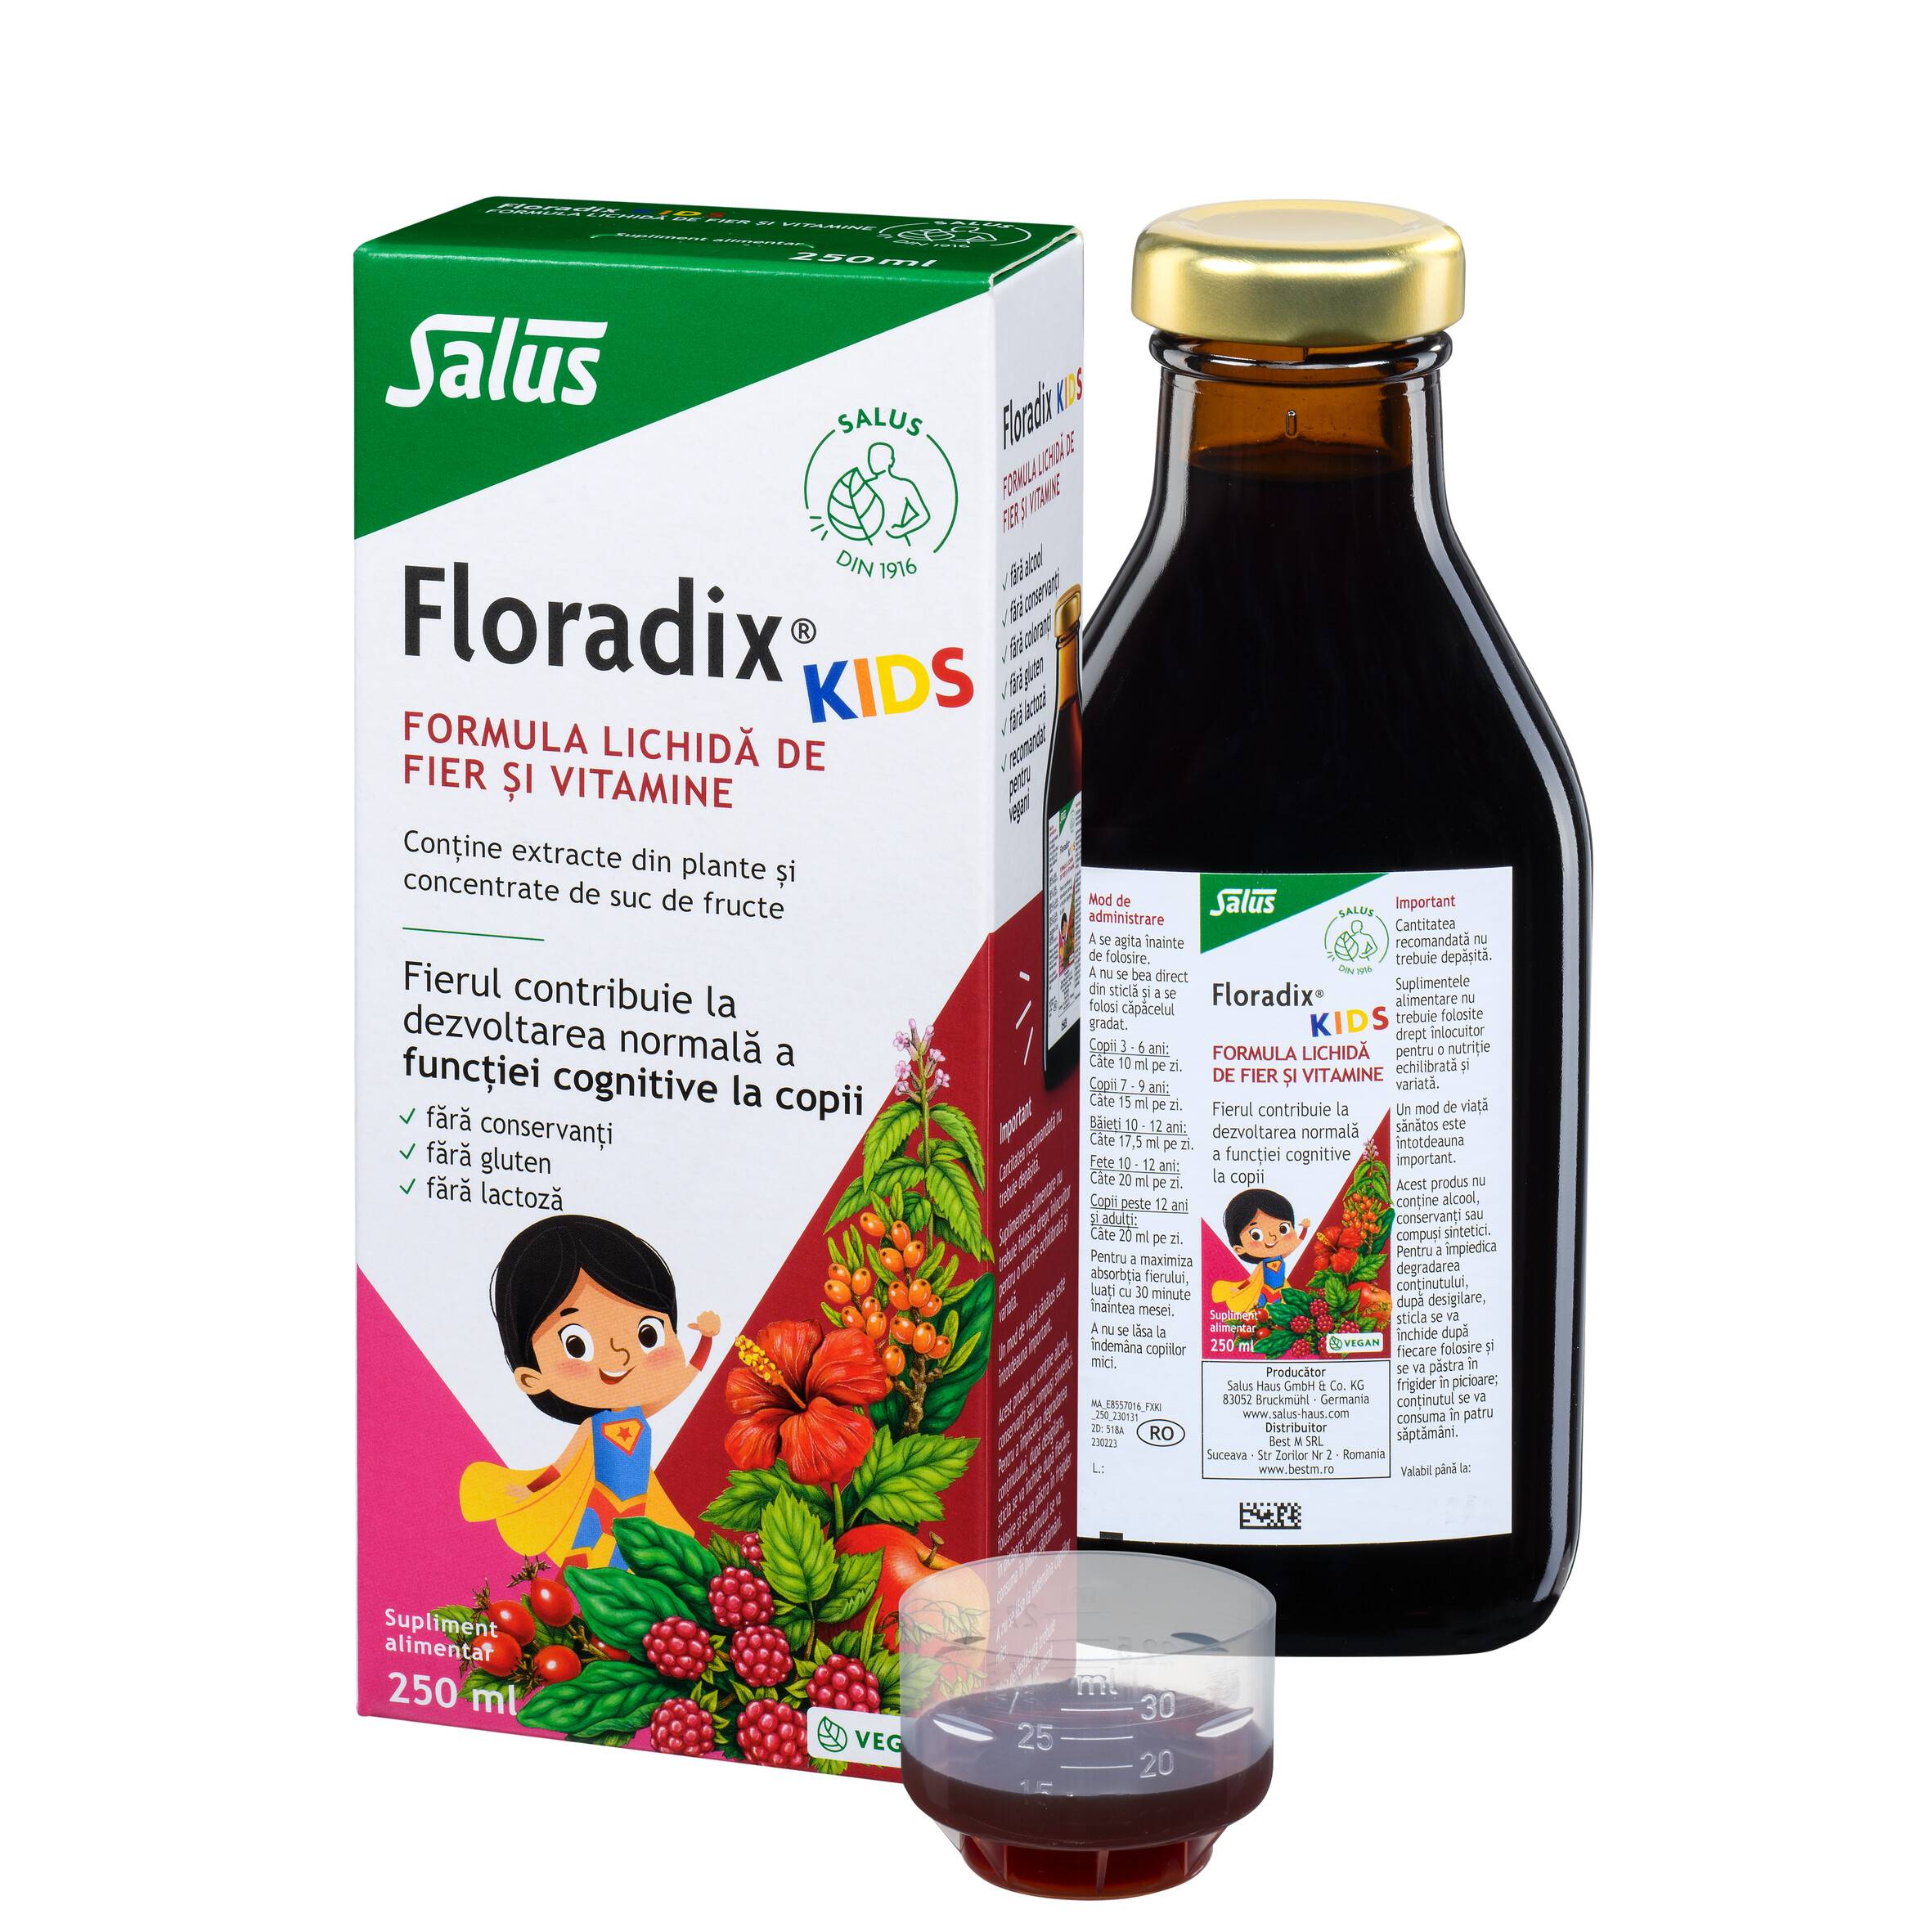 Floradix Kids - Formula Lichida De Fier Si Vitamine Pentru Copii, 250 Ml, Salus Haus